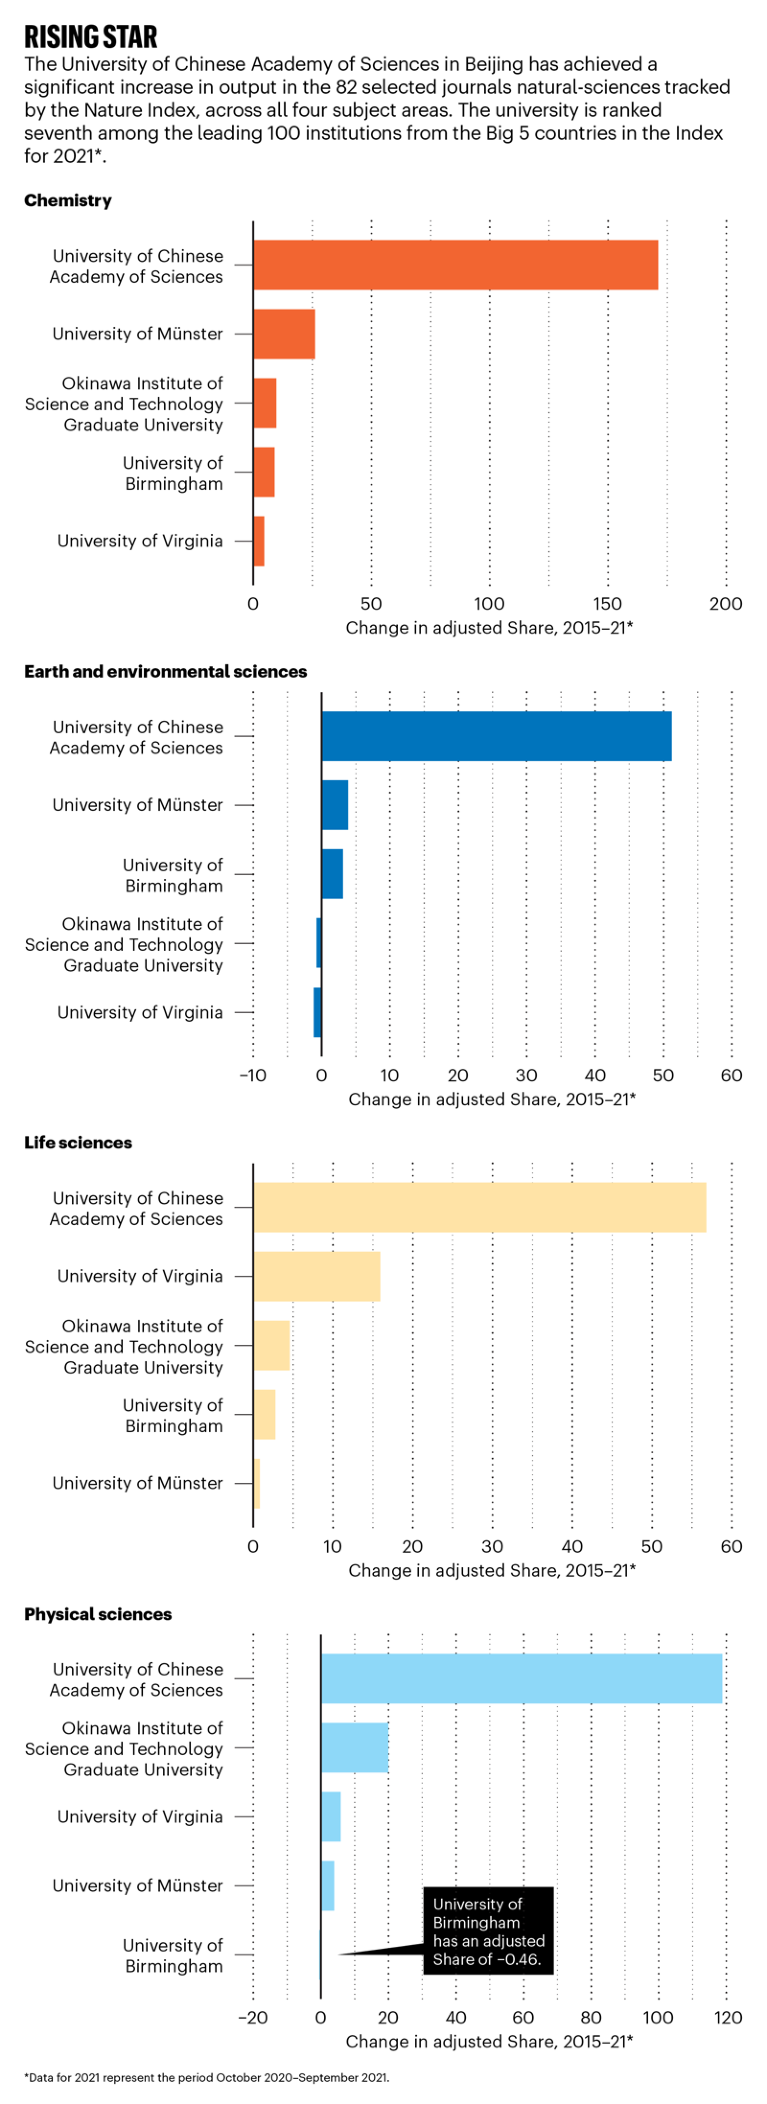 图表显示了五大学院中按主要学科领域划分的前5名